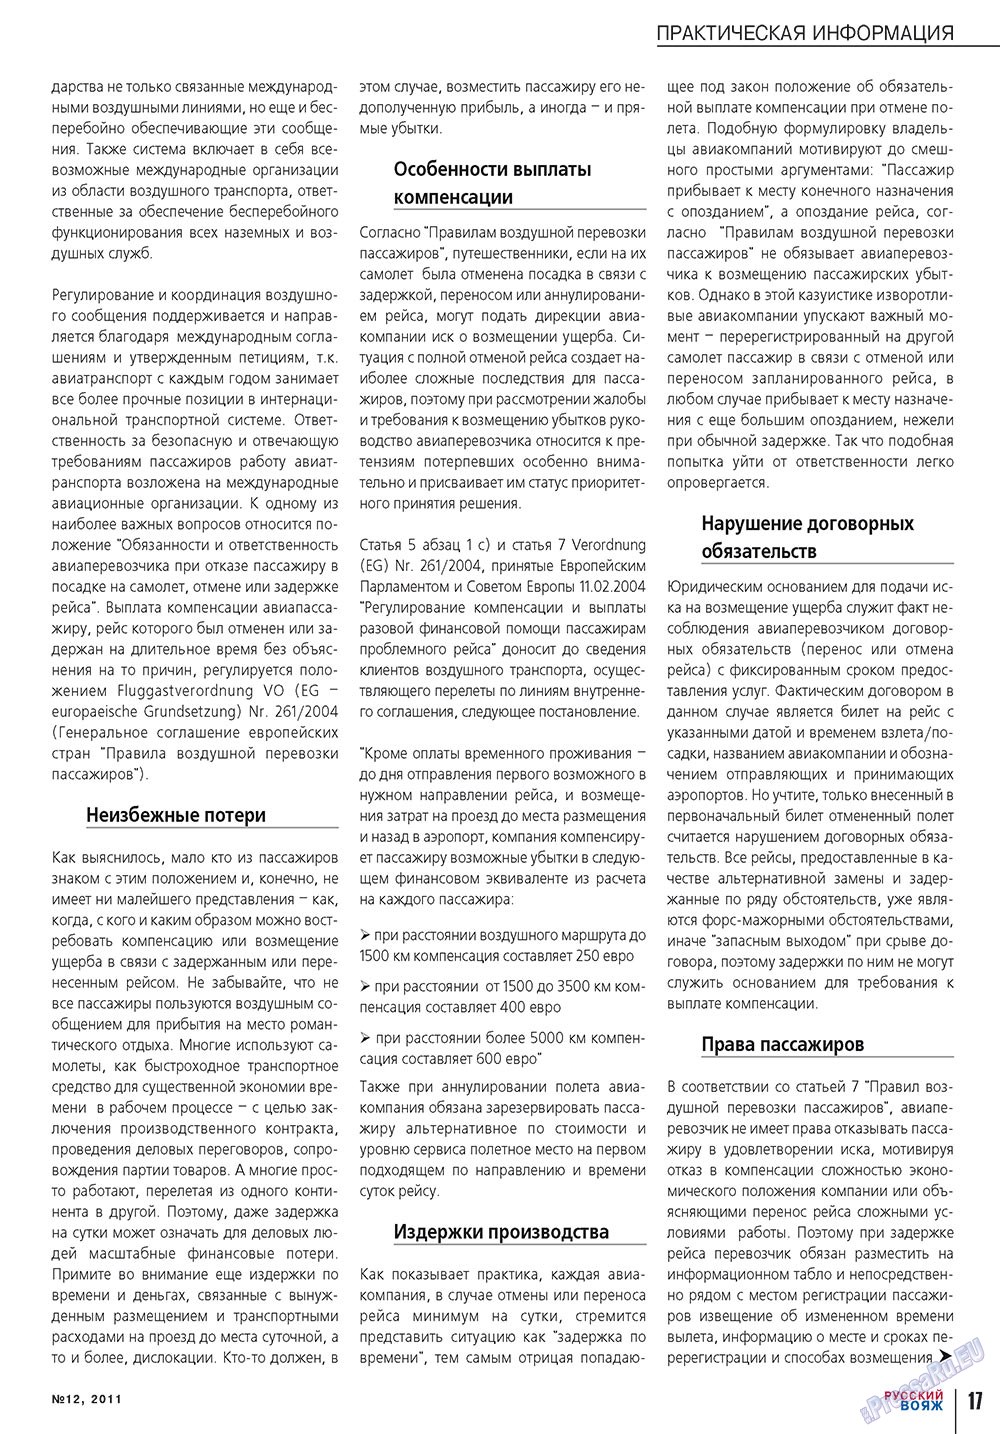 Русский вояж (журнал). 2011 год, номер 12, стр. 17